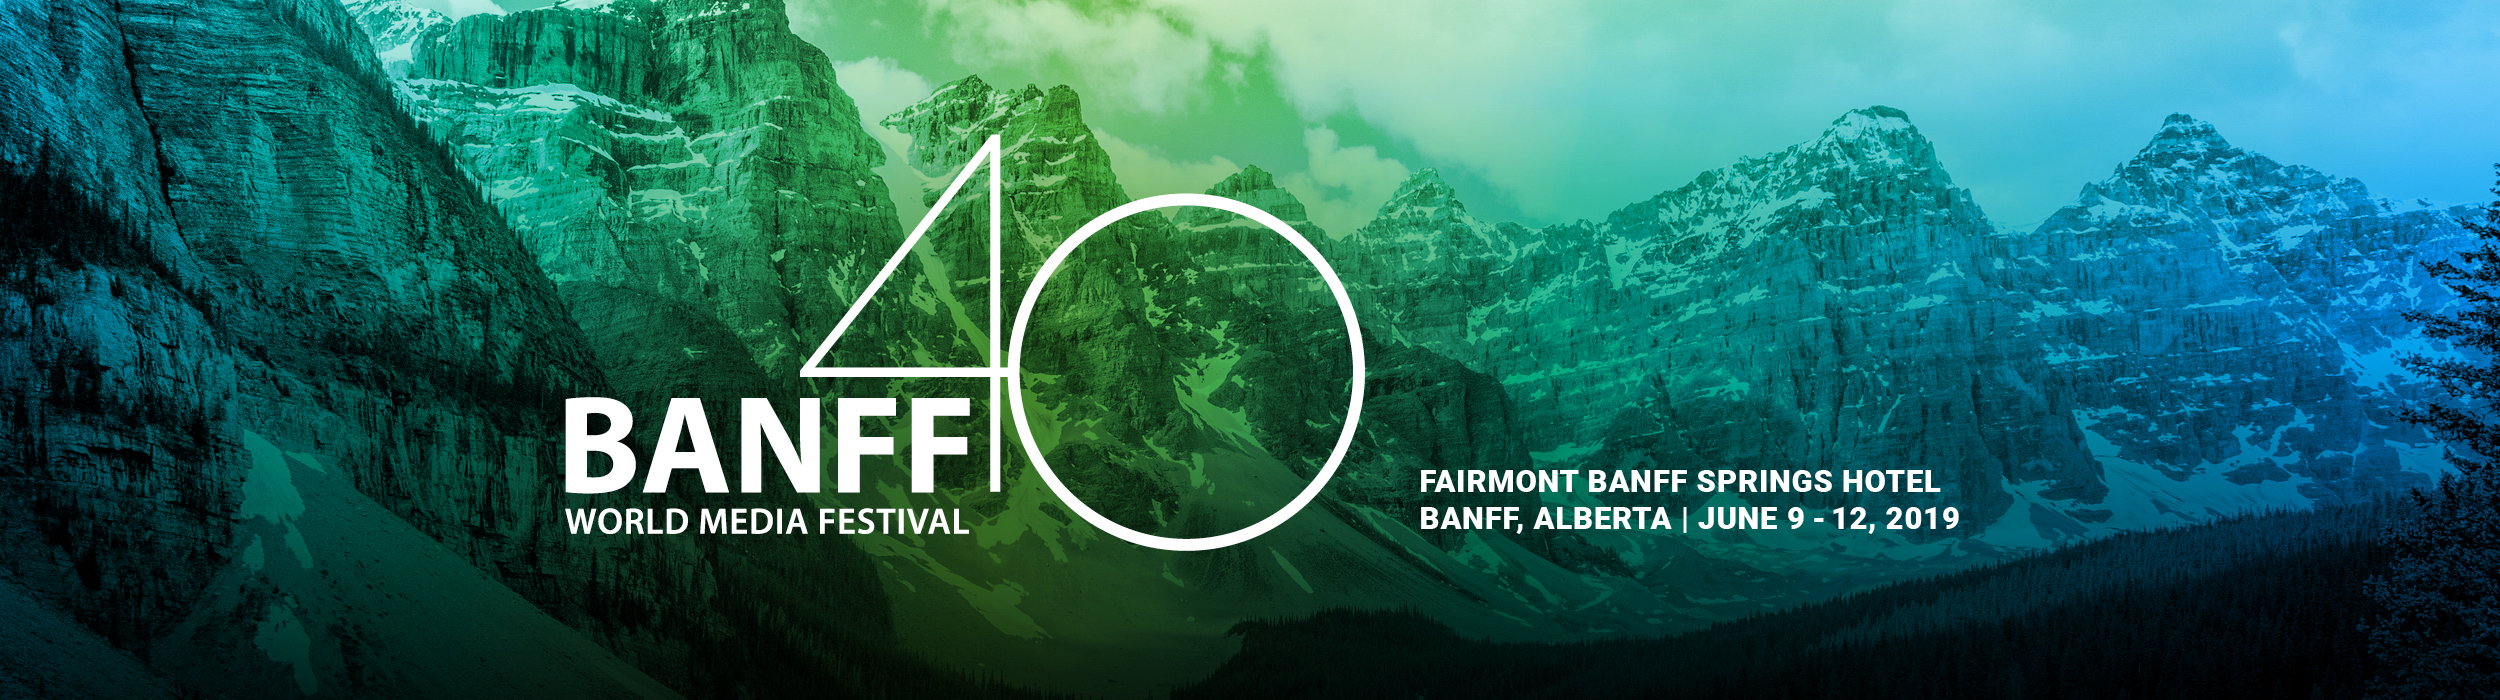 Banff World Media Festival